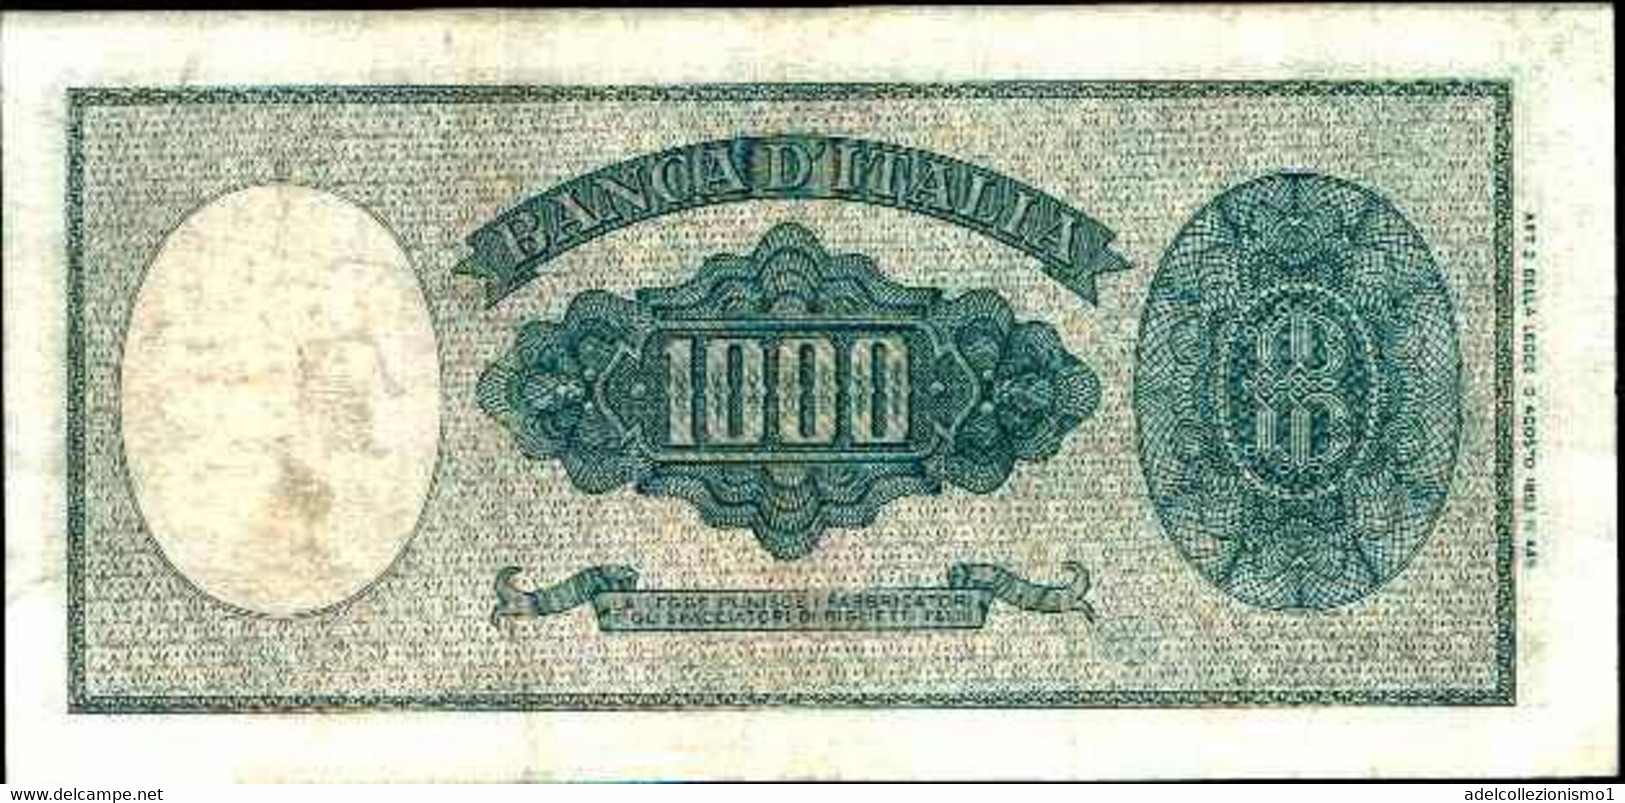 29677) 1000 LIRE ITALIA ORNATA DI PERLE DECR 25 SERTTEMBRE 1961-FDS - 1.000 Lire